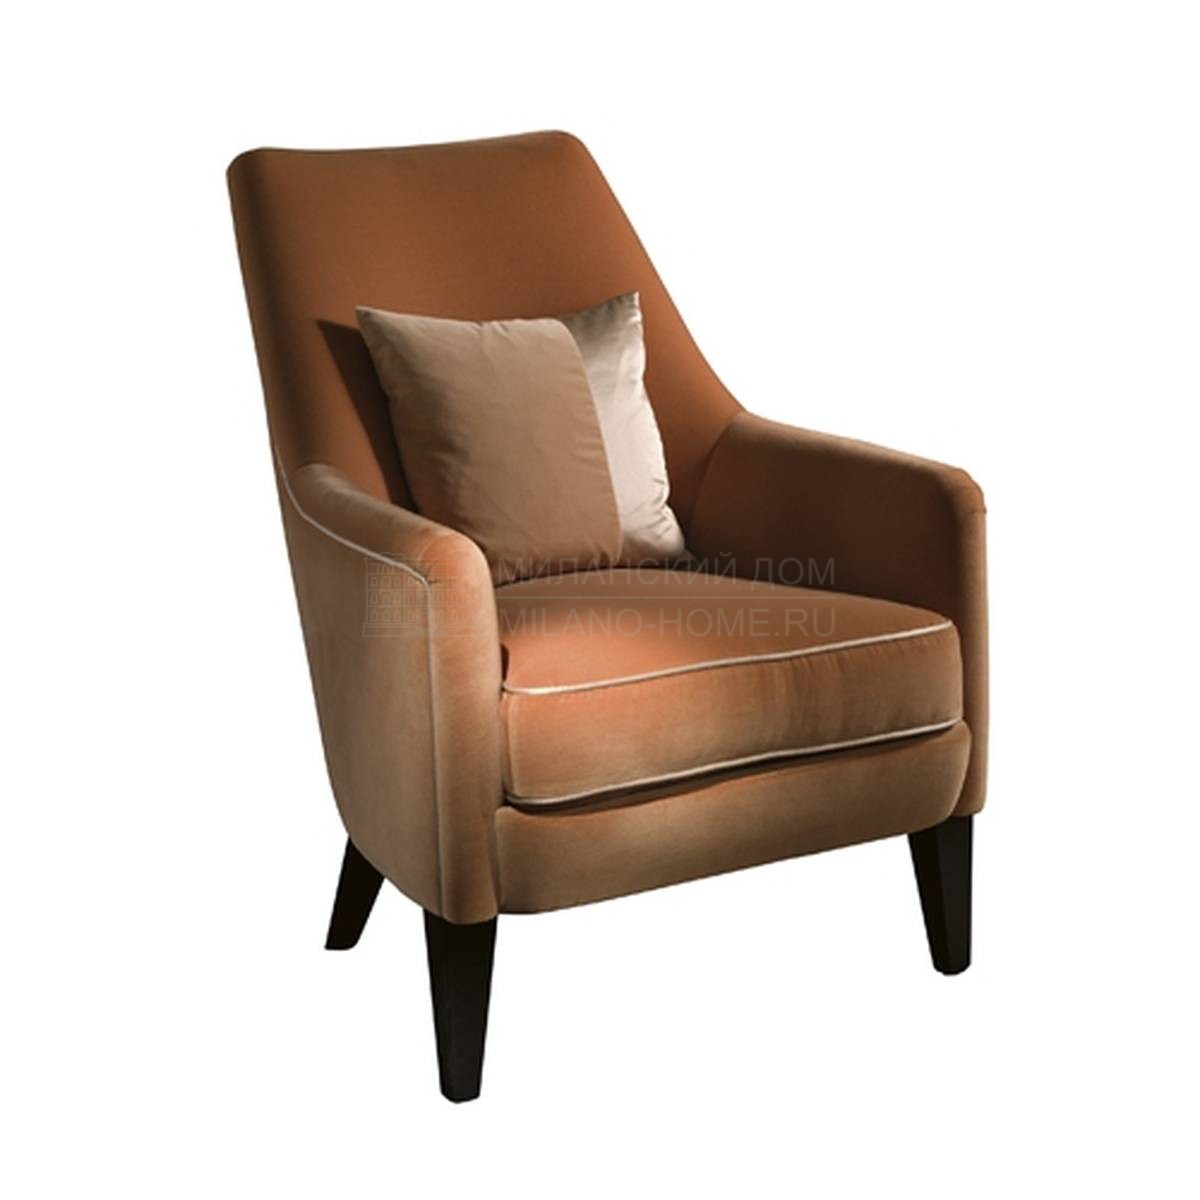 Кресло Adele/ armchair из Италии фабрики SOFTHOUSE